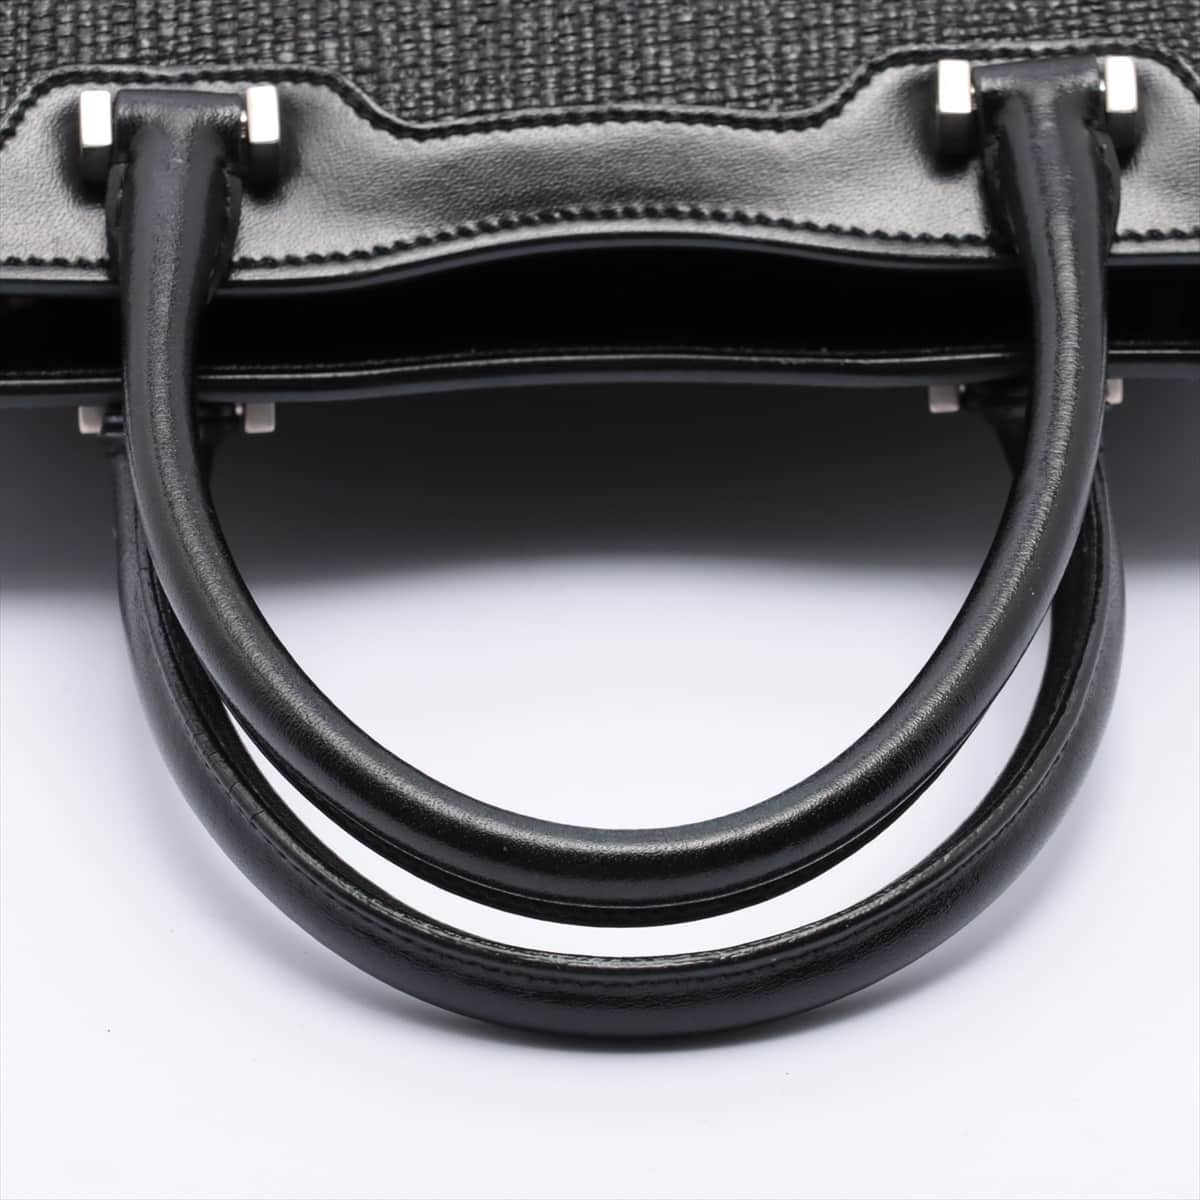 Saint Laurent Paris Uptown Straw & leather Hand bag Black 561203